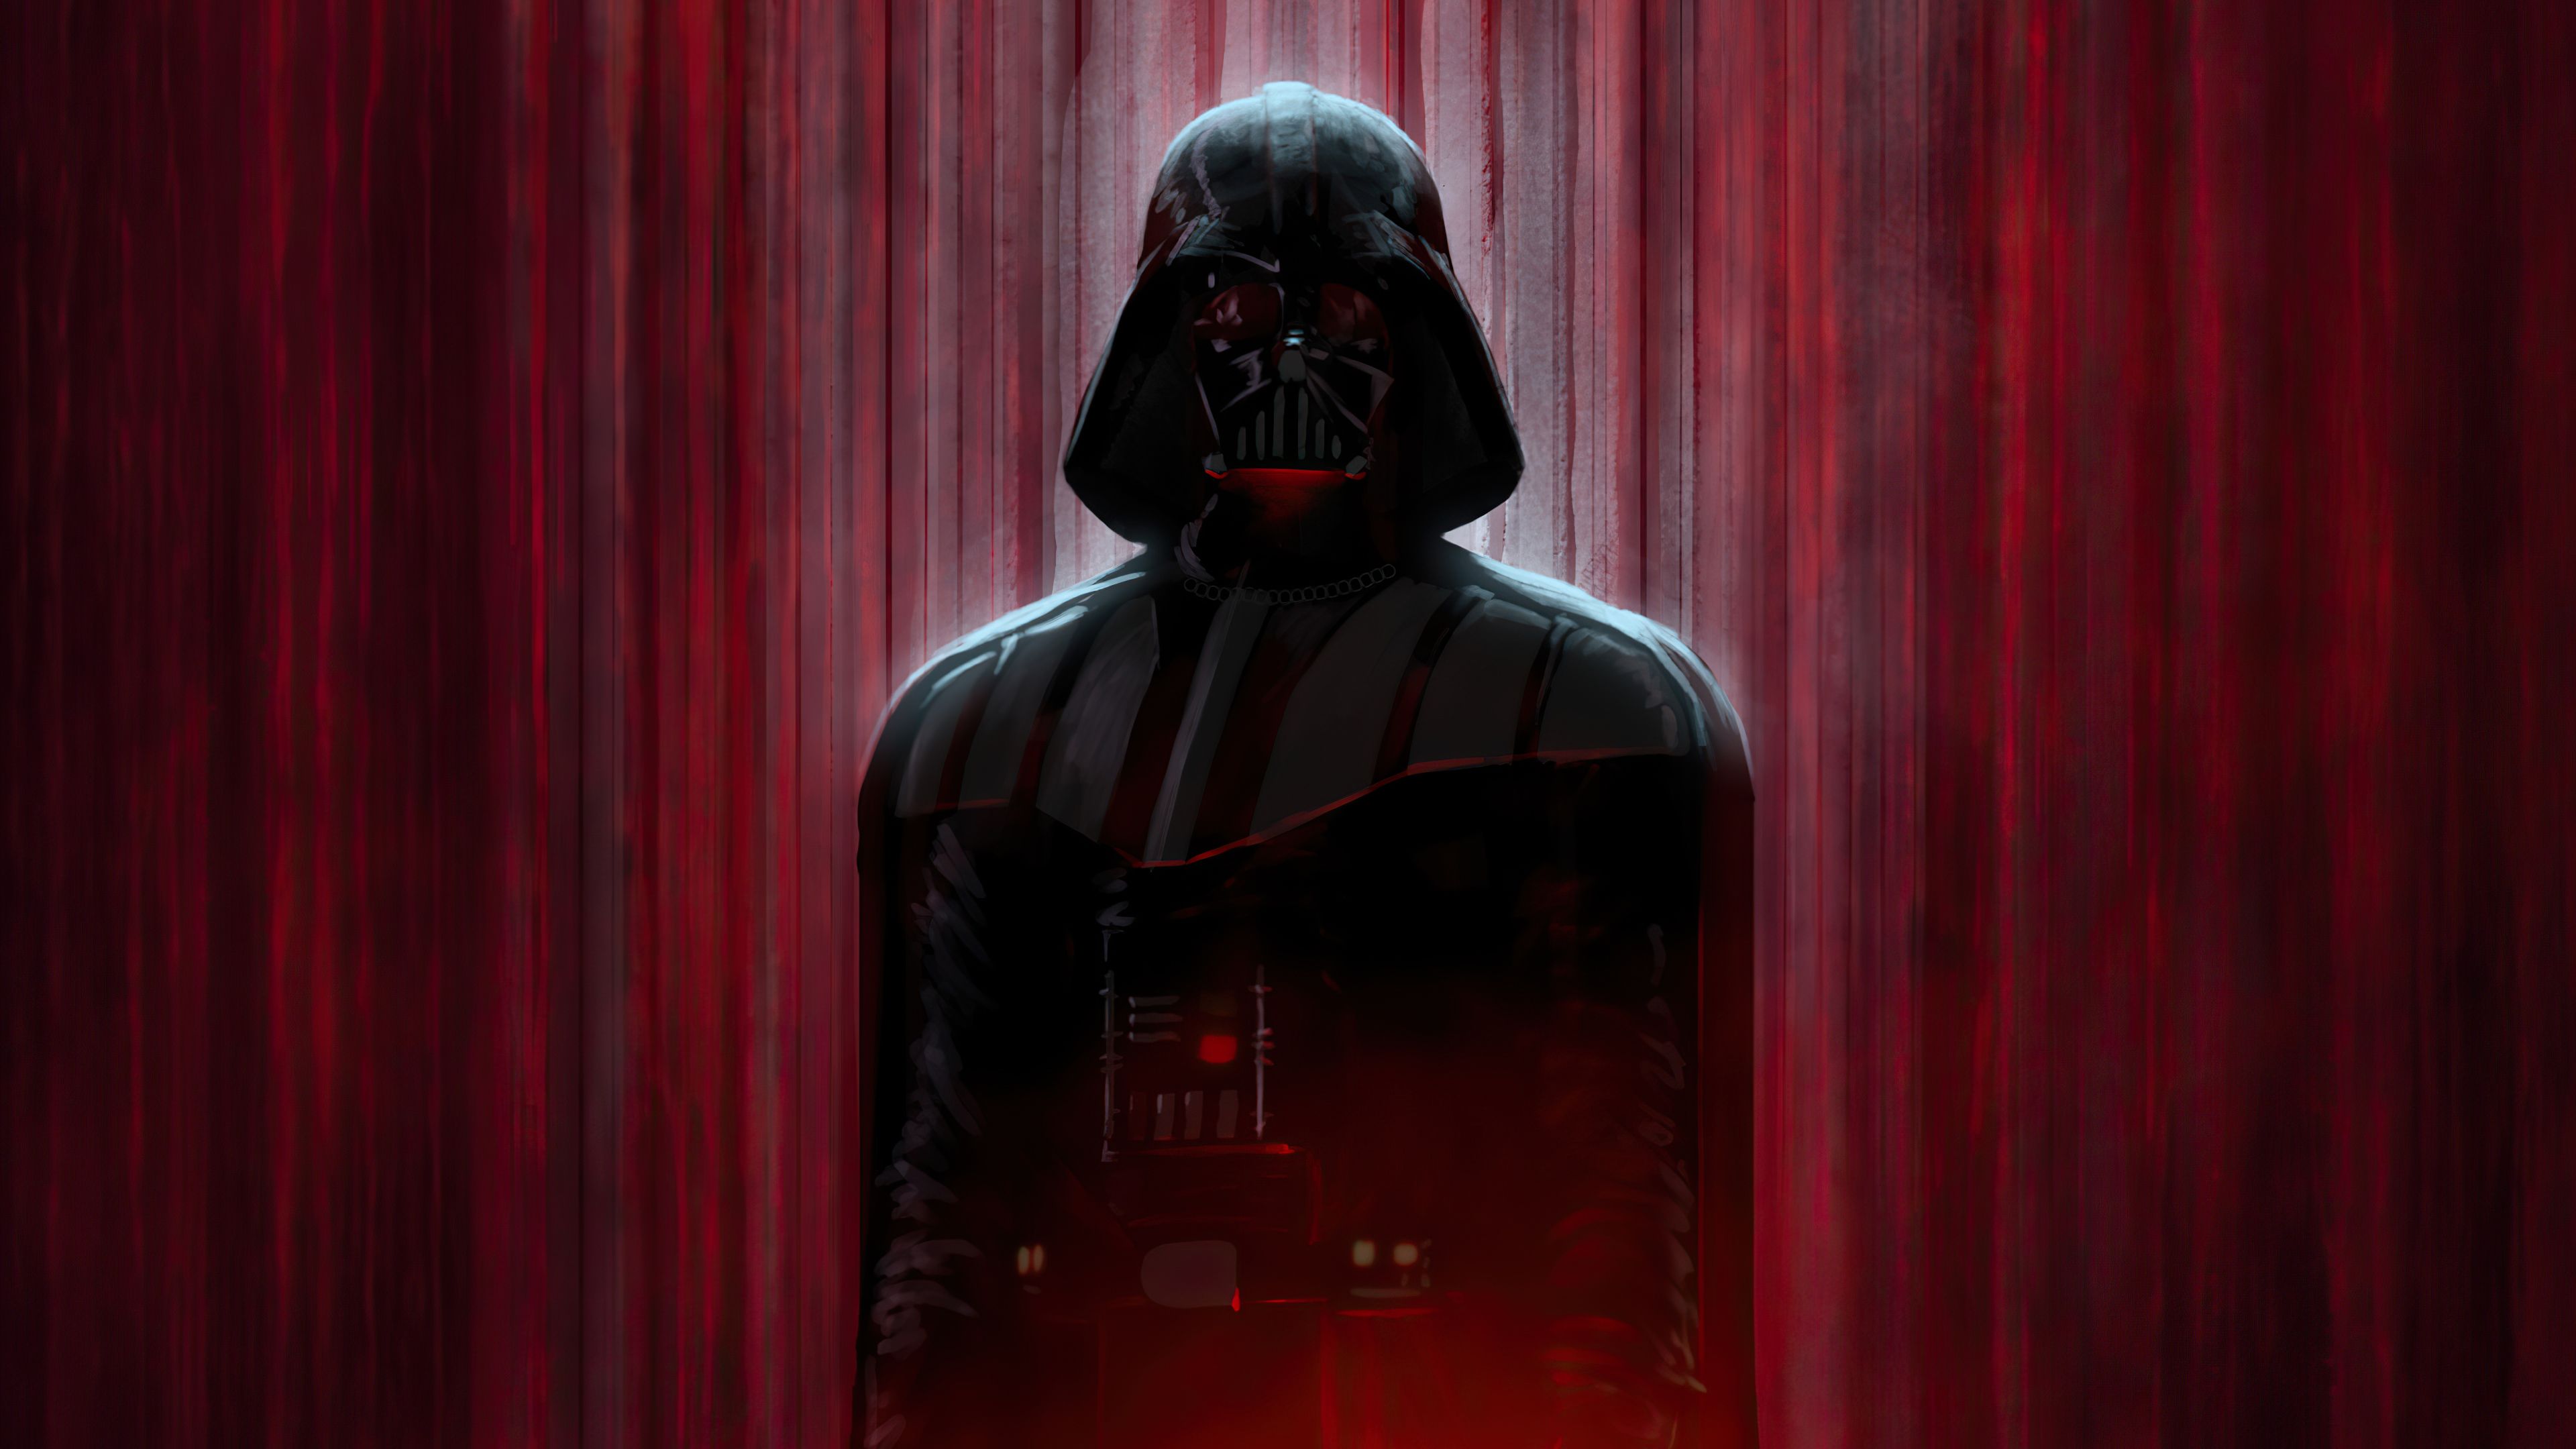 Darth Vader in shadows Wallpaper 4k Ultra HD - Darth Vader